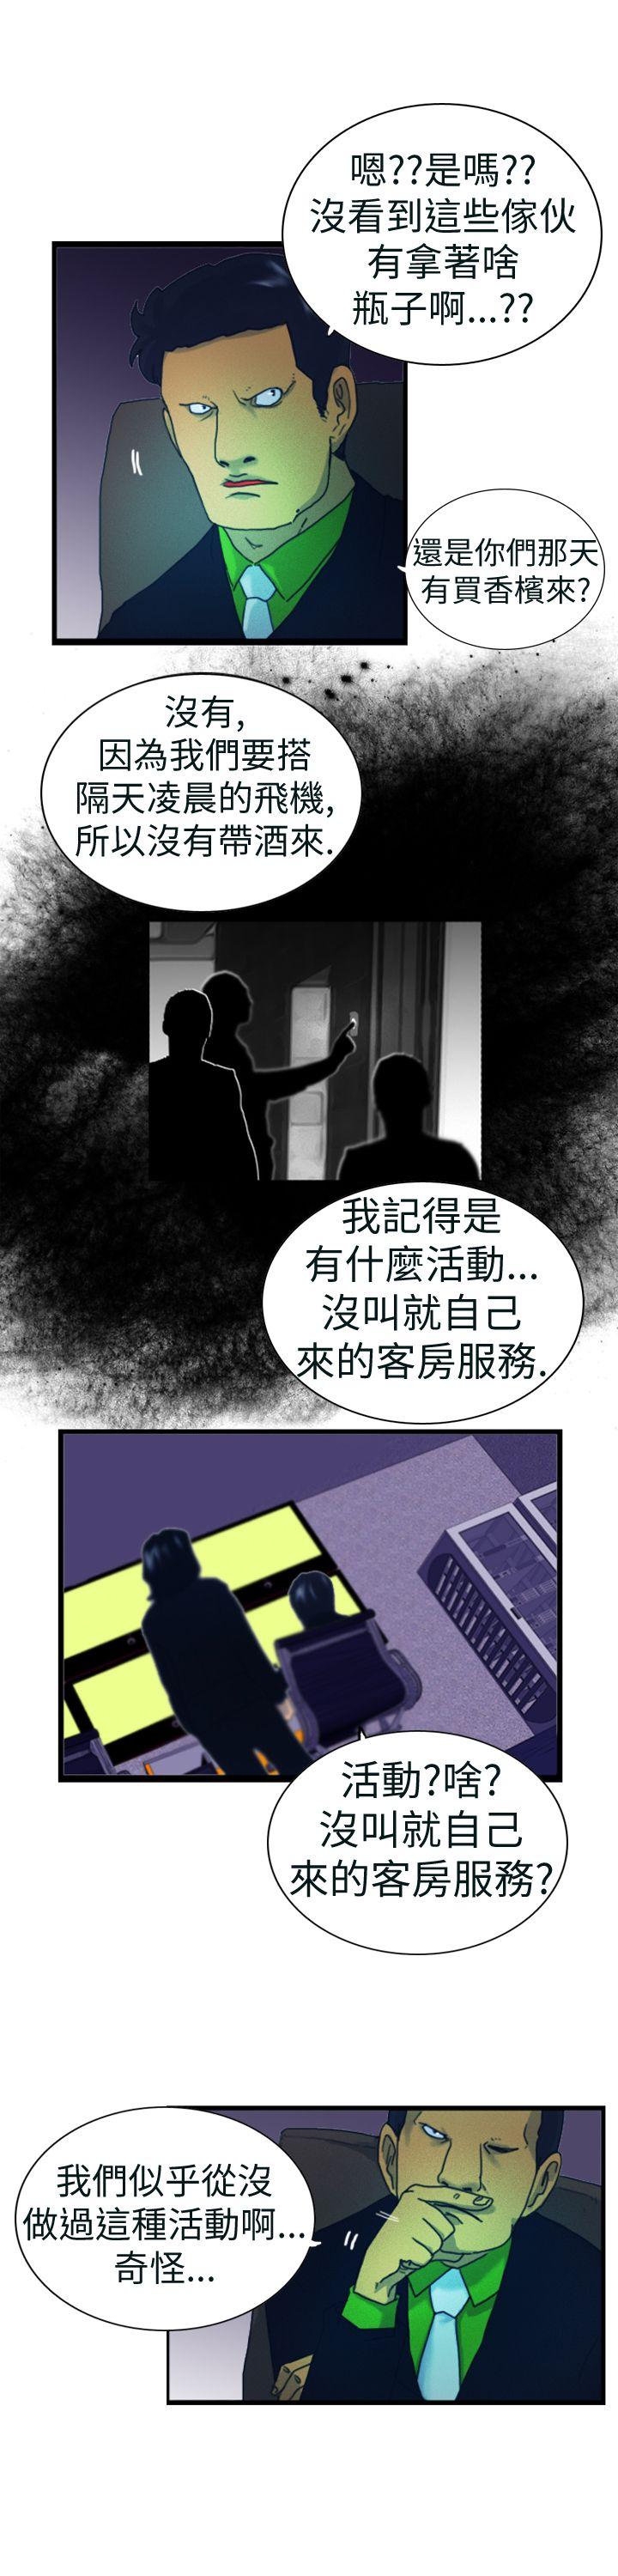 韩国污漫画 覺醒 第4话疑心 15